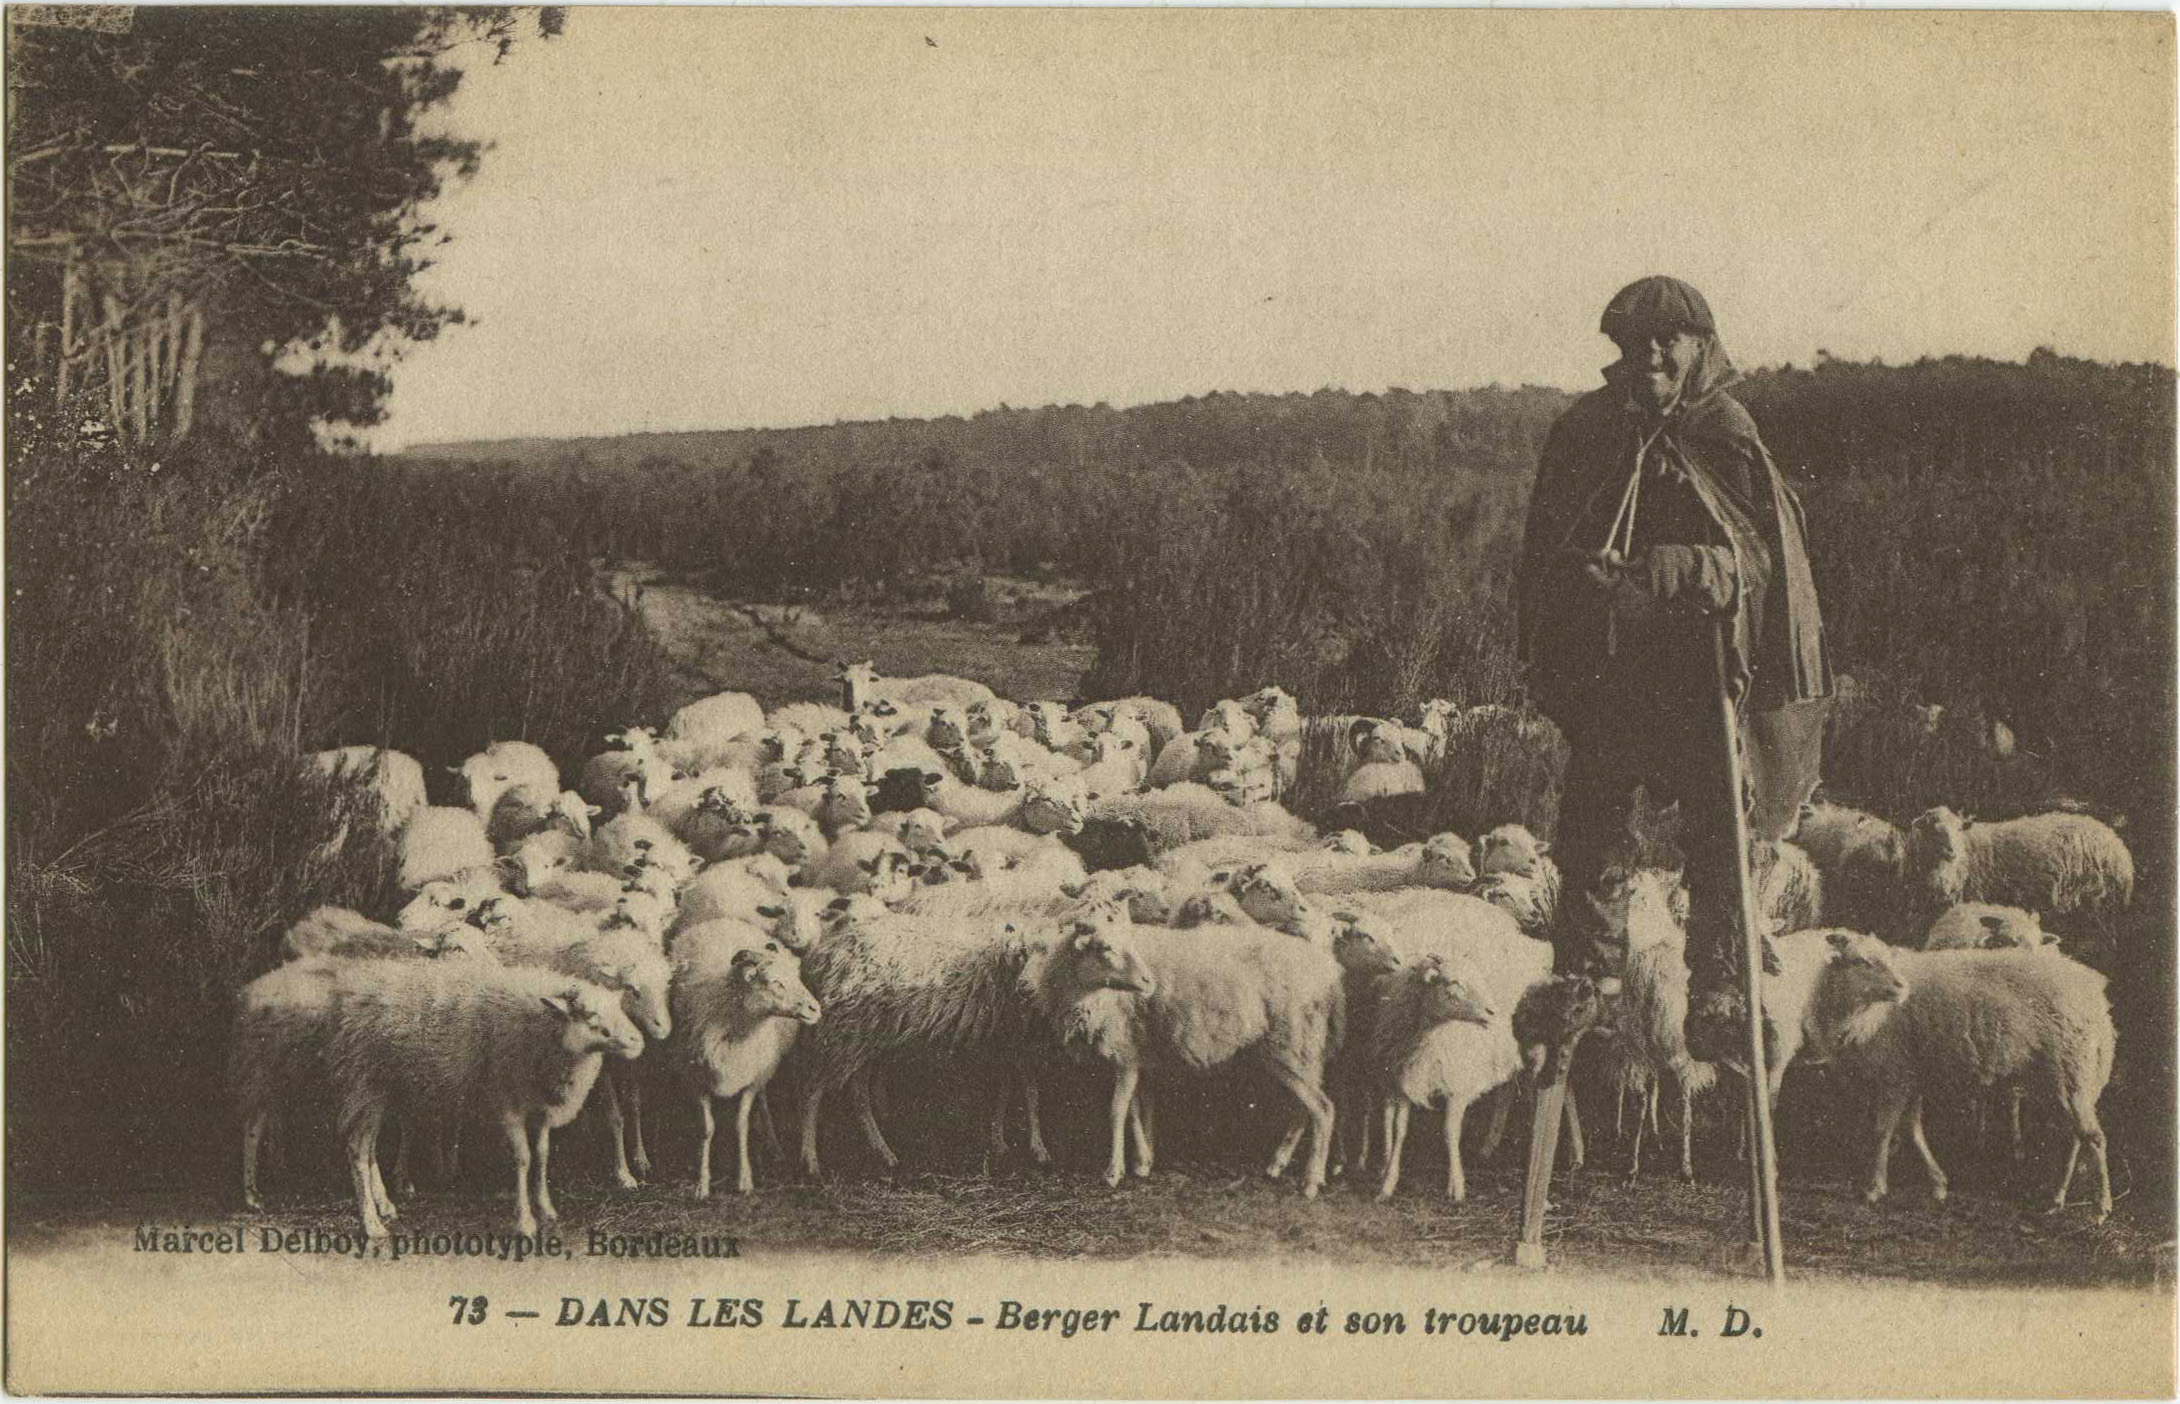 Landes - DANS LES LANDES - Berger Landais et son troupeau